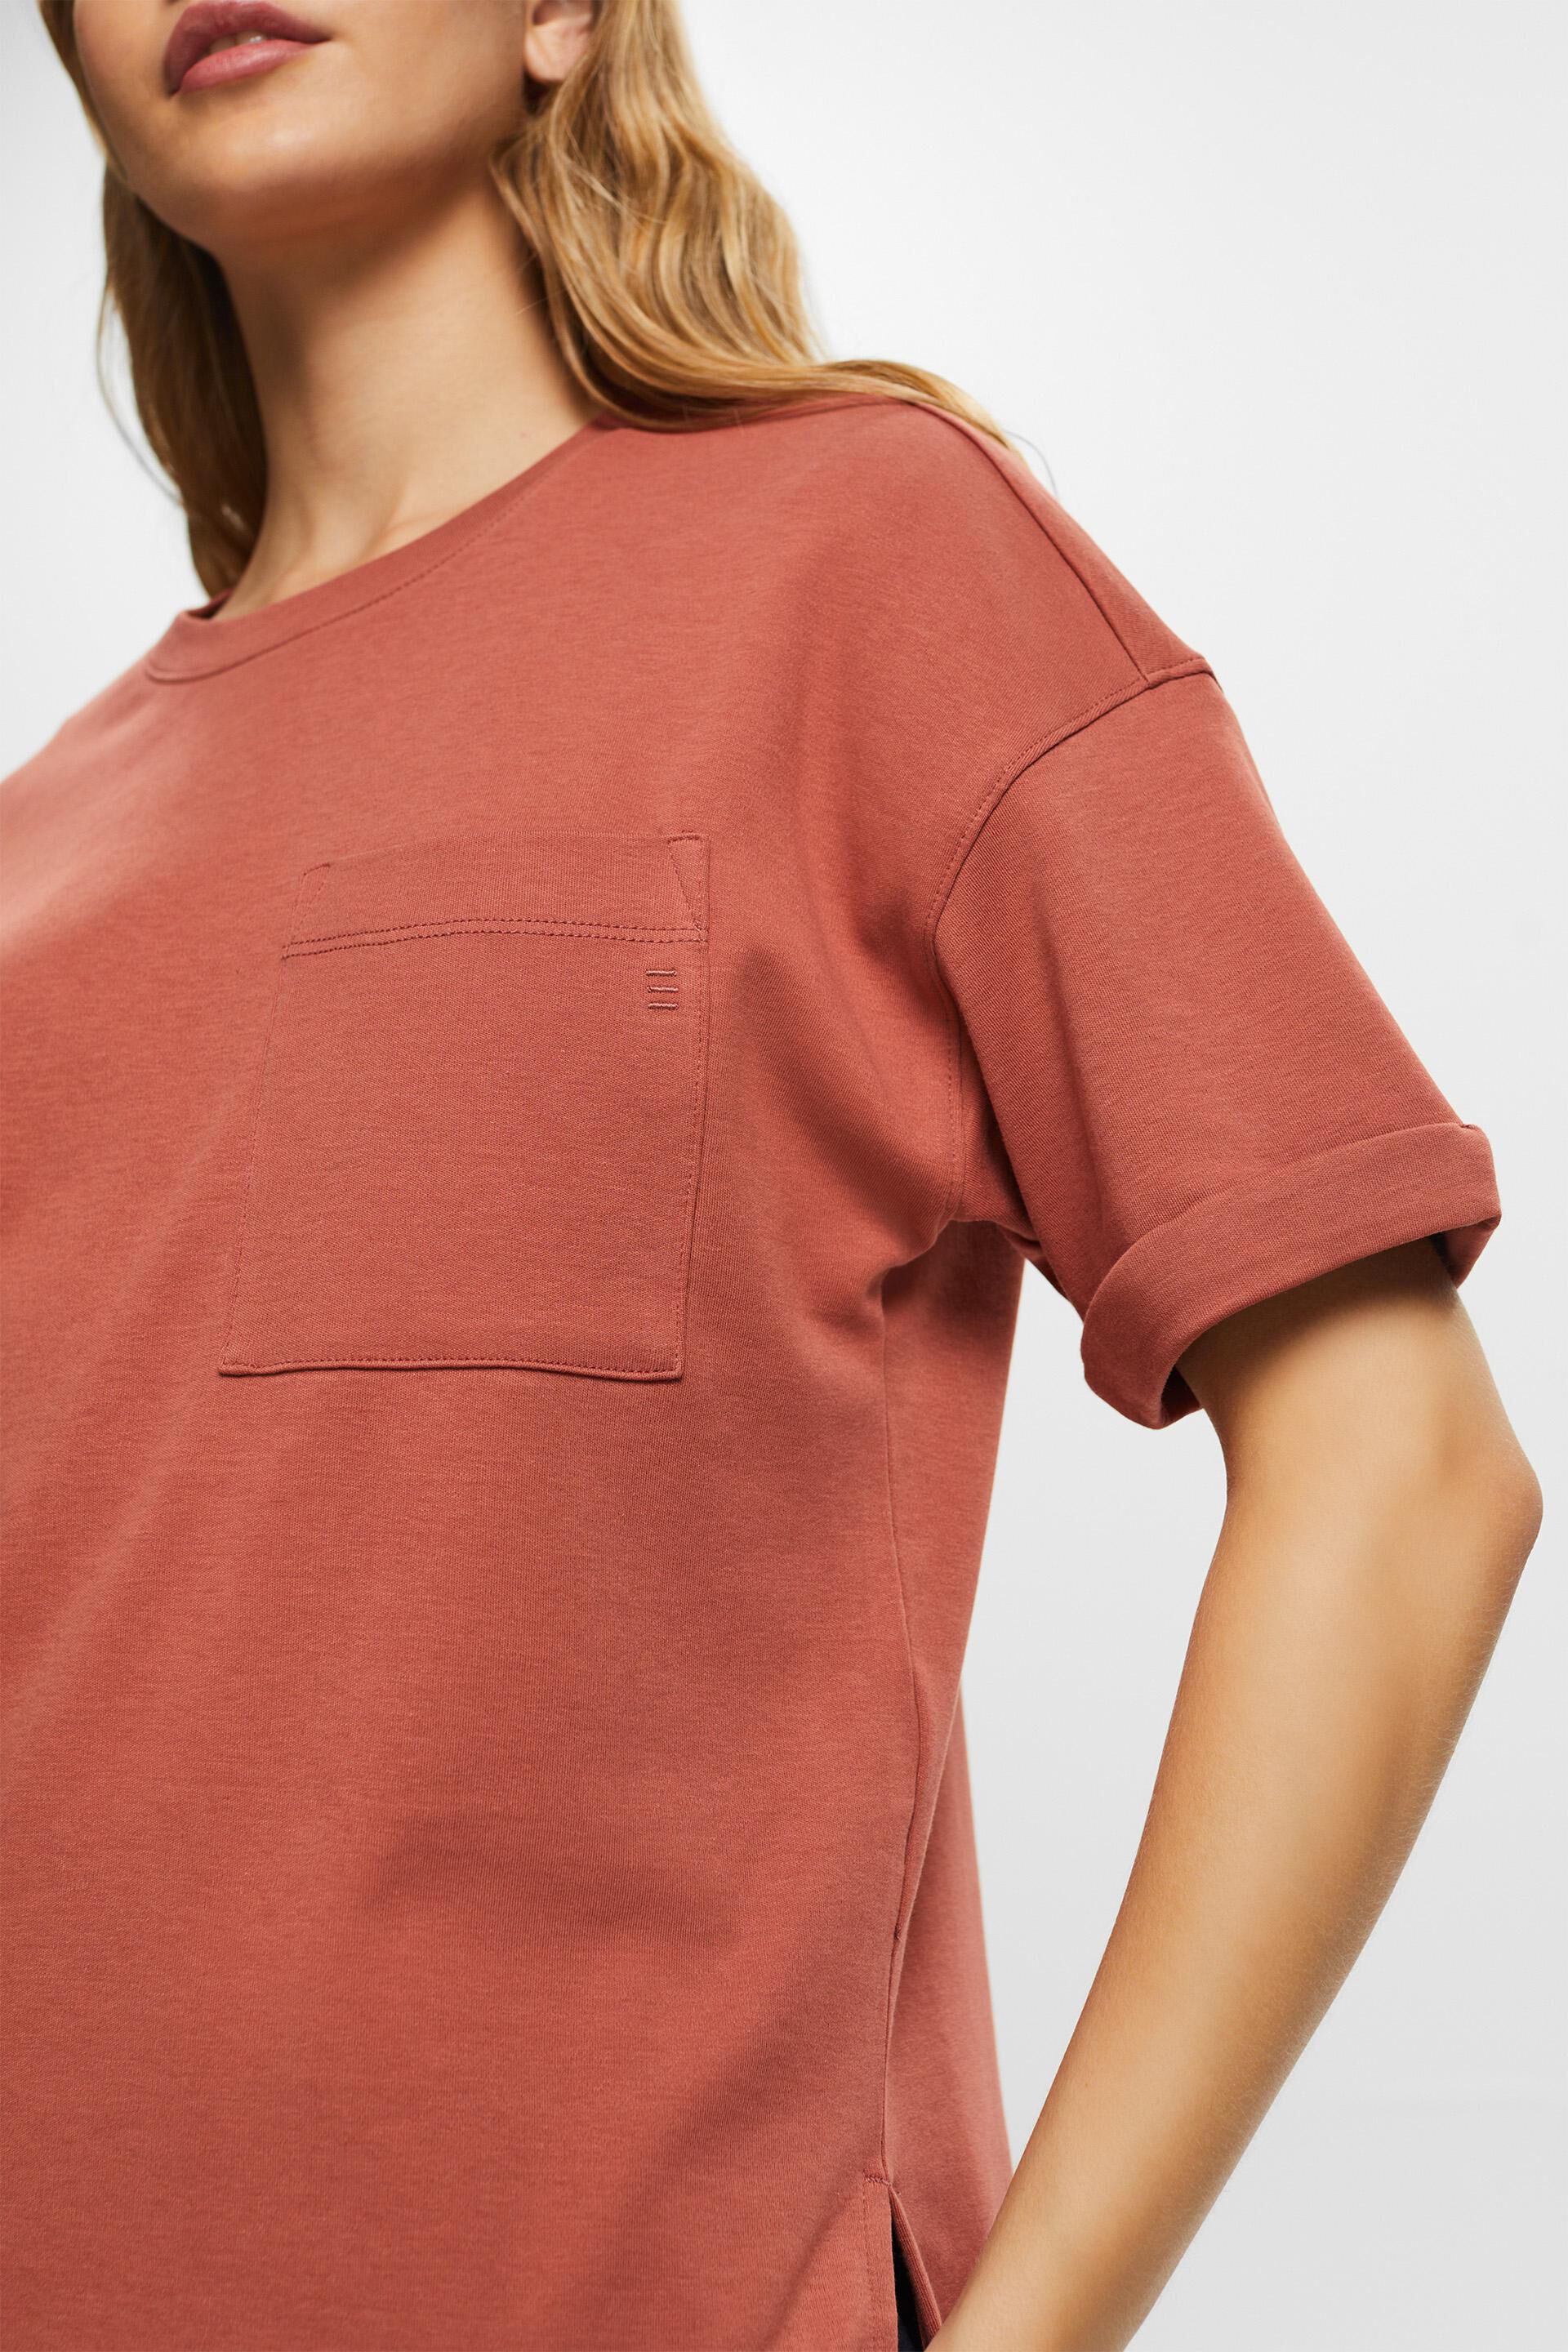 Esprit Übergroßes aufgesetzter Tasche T-Shirt mit